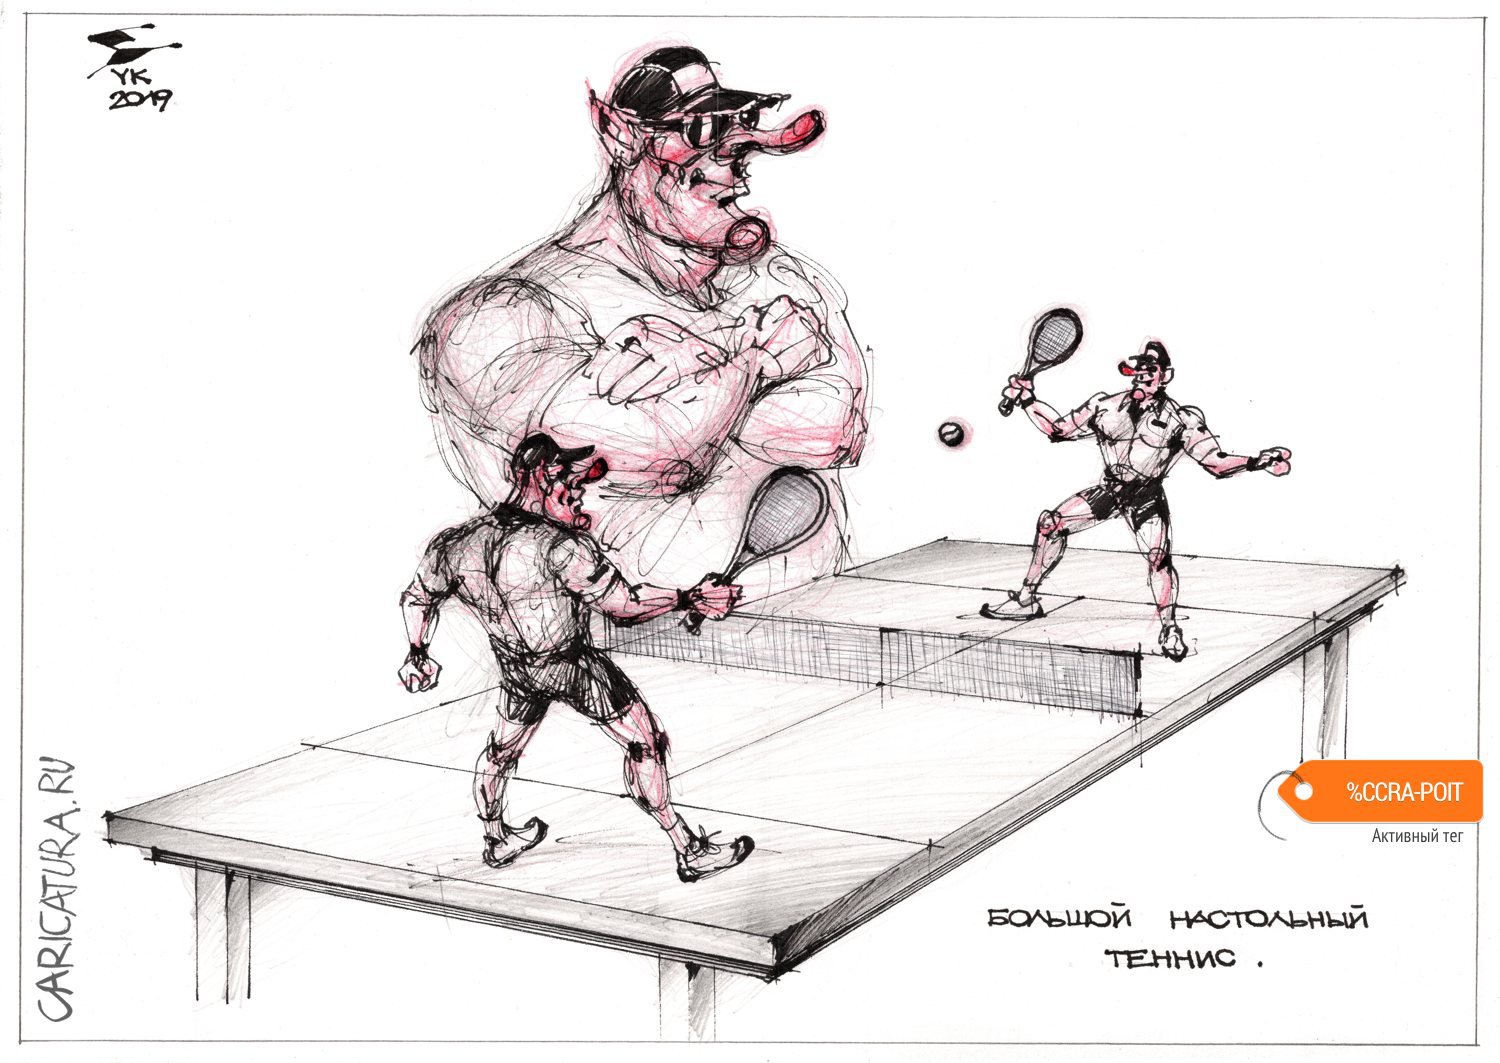 Карикатура "Большой настольный теннис", Юрий Косарев